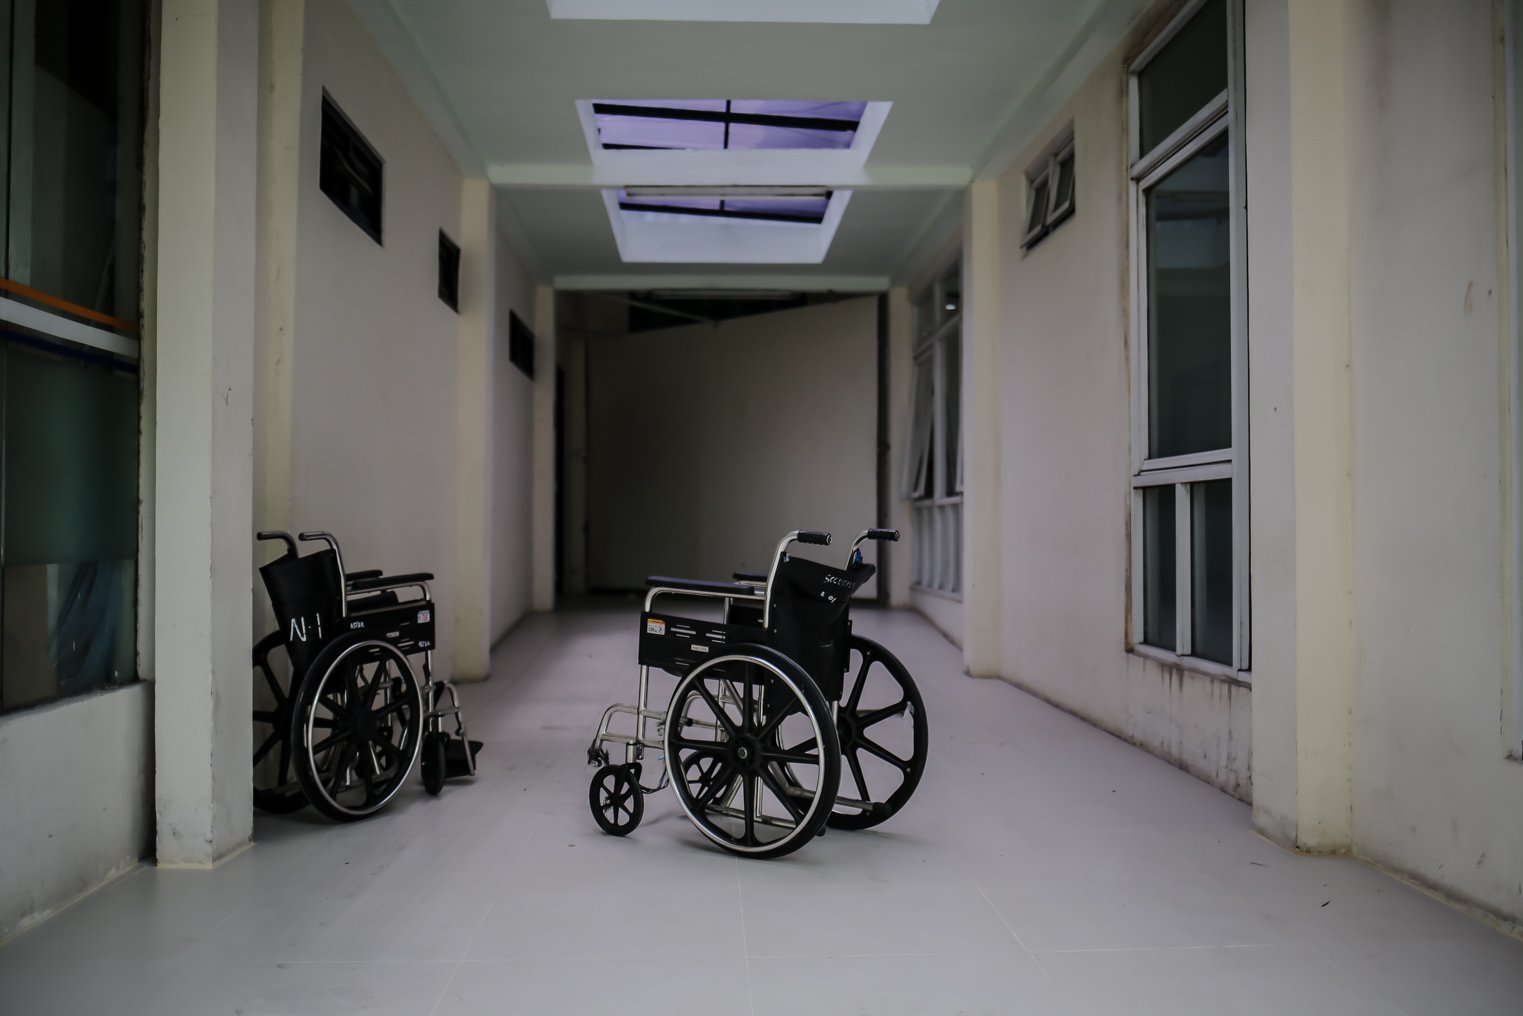 Kursi roda disediakan untuk memindahkan pasien positif Covid-19 ke ruang isolasi di Rumah Sakit Umum Daerah (RSUD) Chasbullah Abdulmadjid, Kota Bekasi, Jawa Barat, Jumat (4/2/2022). Tingkat keterisian rumah sakit di rumah sakit rujukan Covid-19 di Bekasi mencapai 41 persen. Total kasus aktif Covid-19 di Kota Bekasi kini mencapai sekitar 5.853.